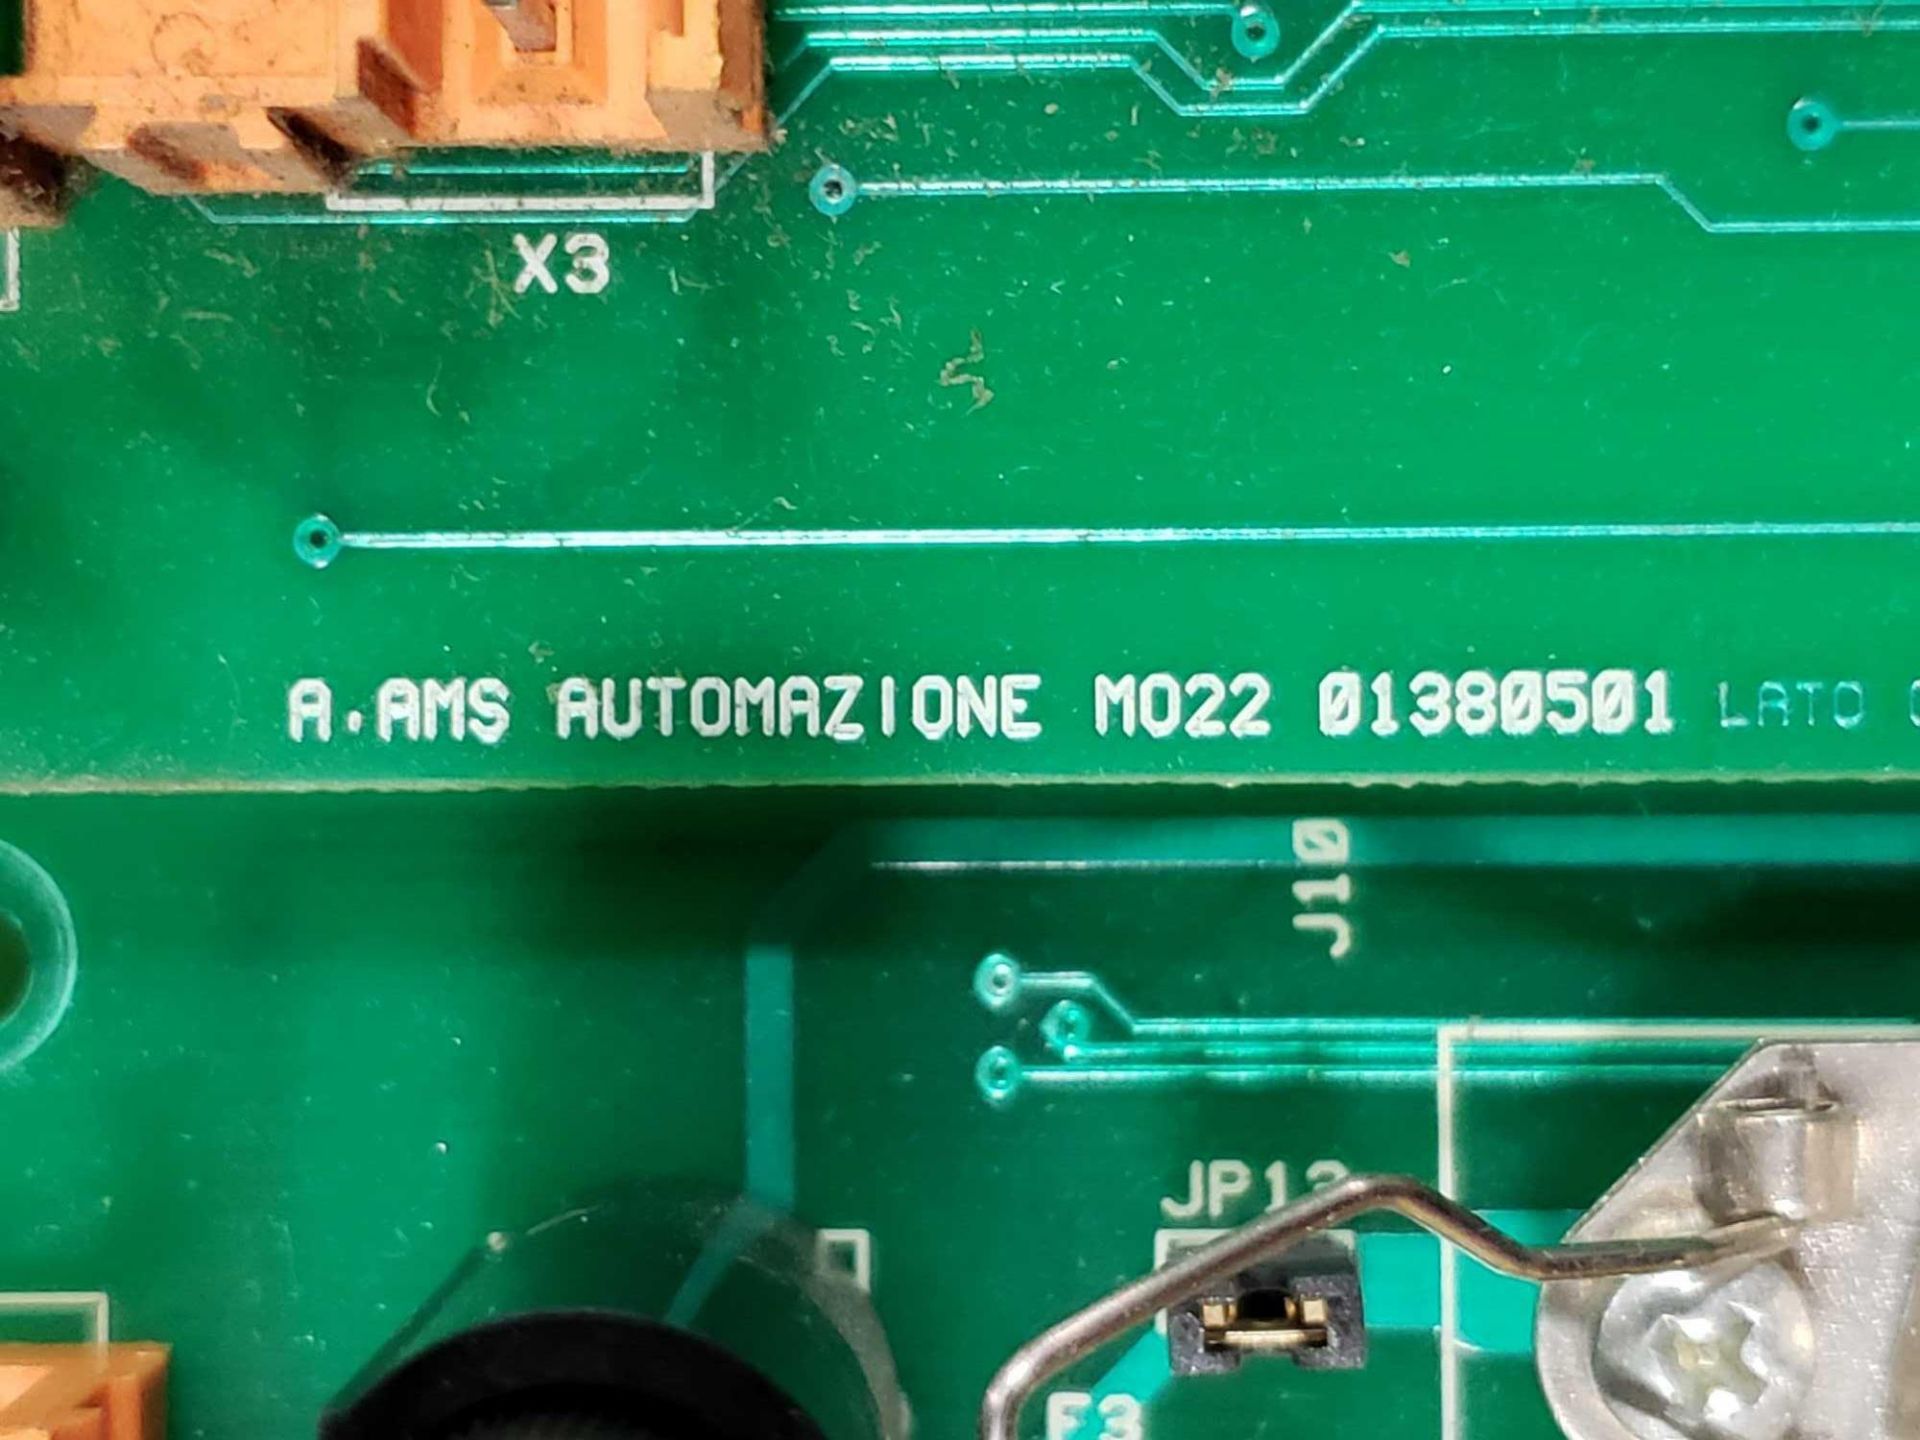 Automazione control board model Model 01380501. - Image 2 of 2